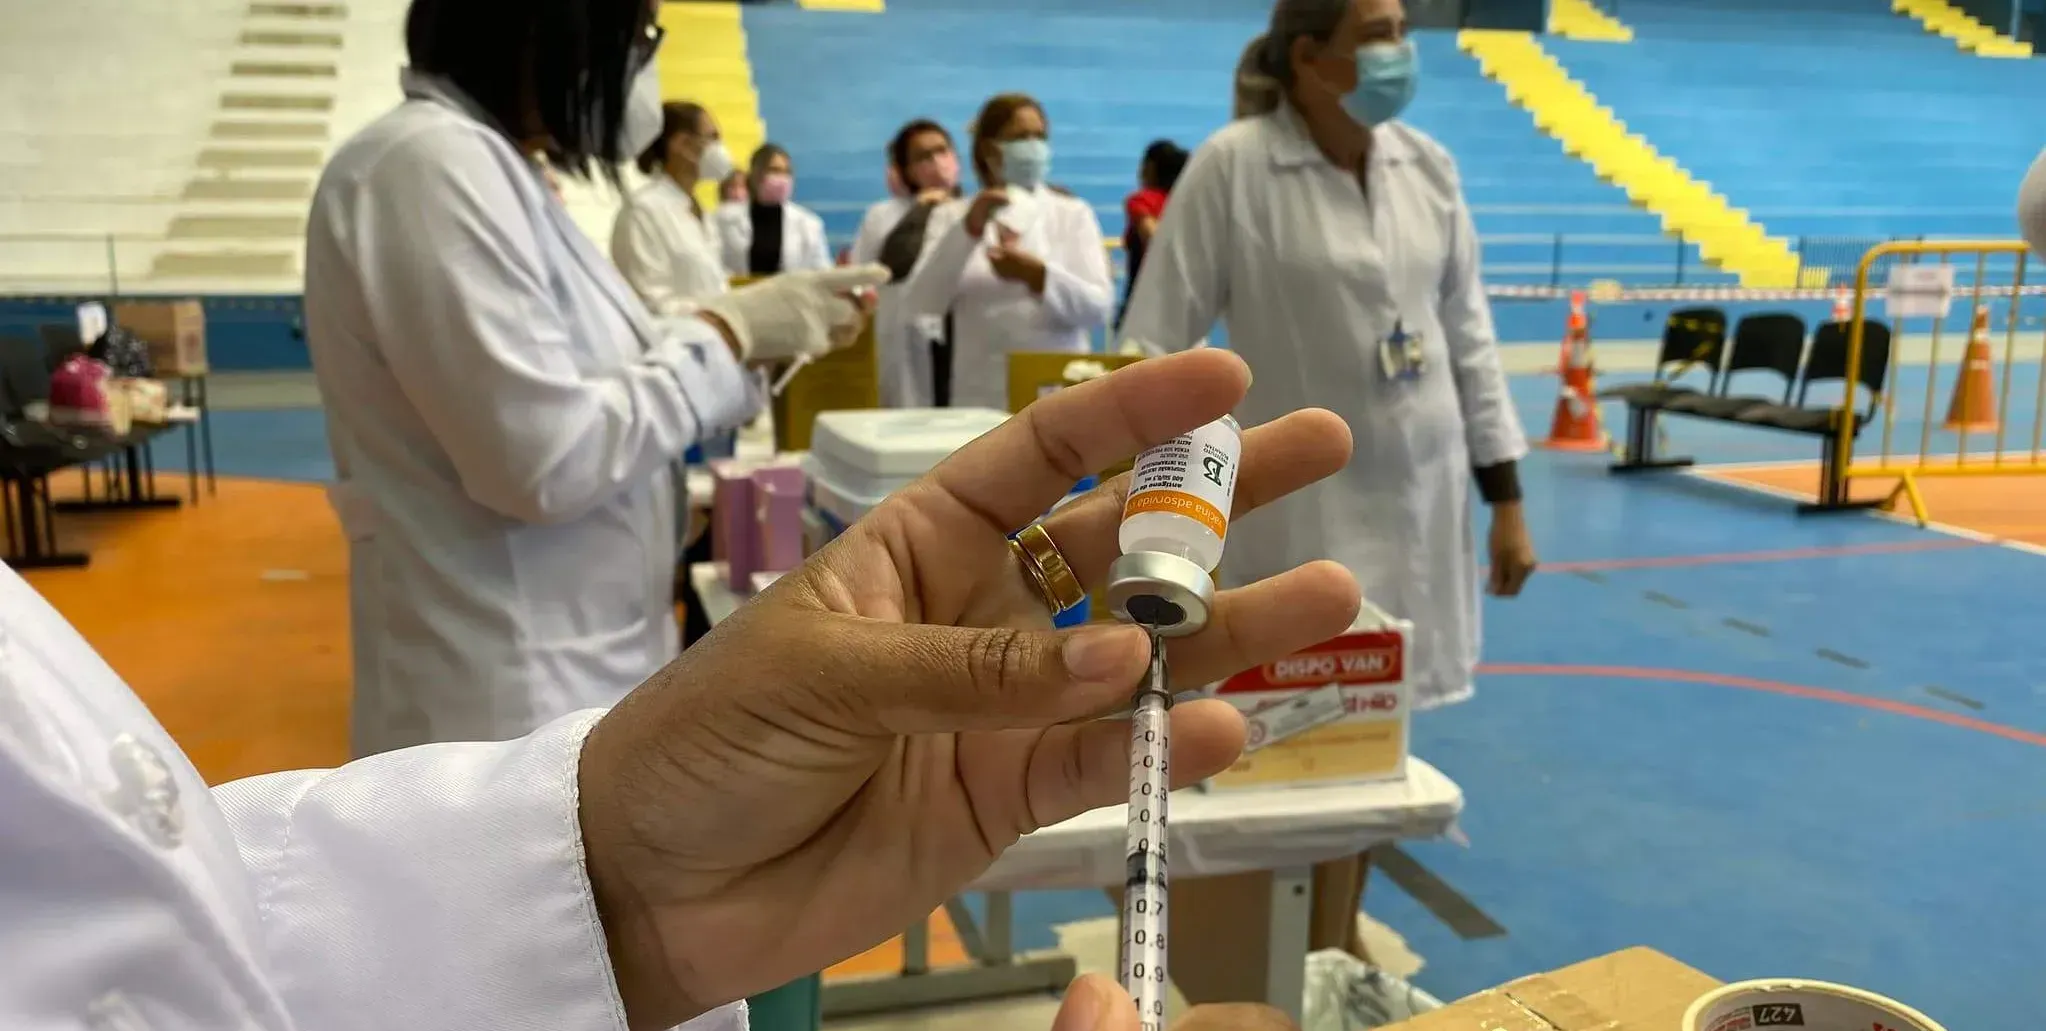  São Paulo manda 445 pessoas para o fim da fila após recusa de vacina disponível 